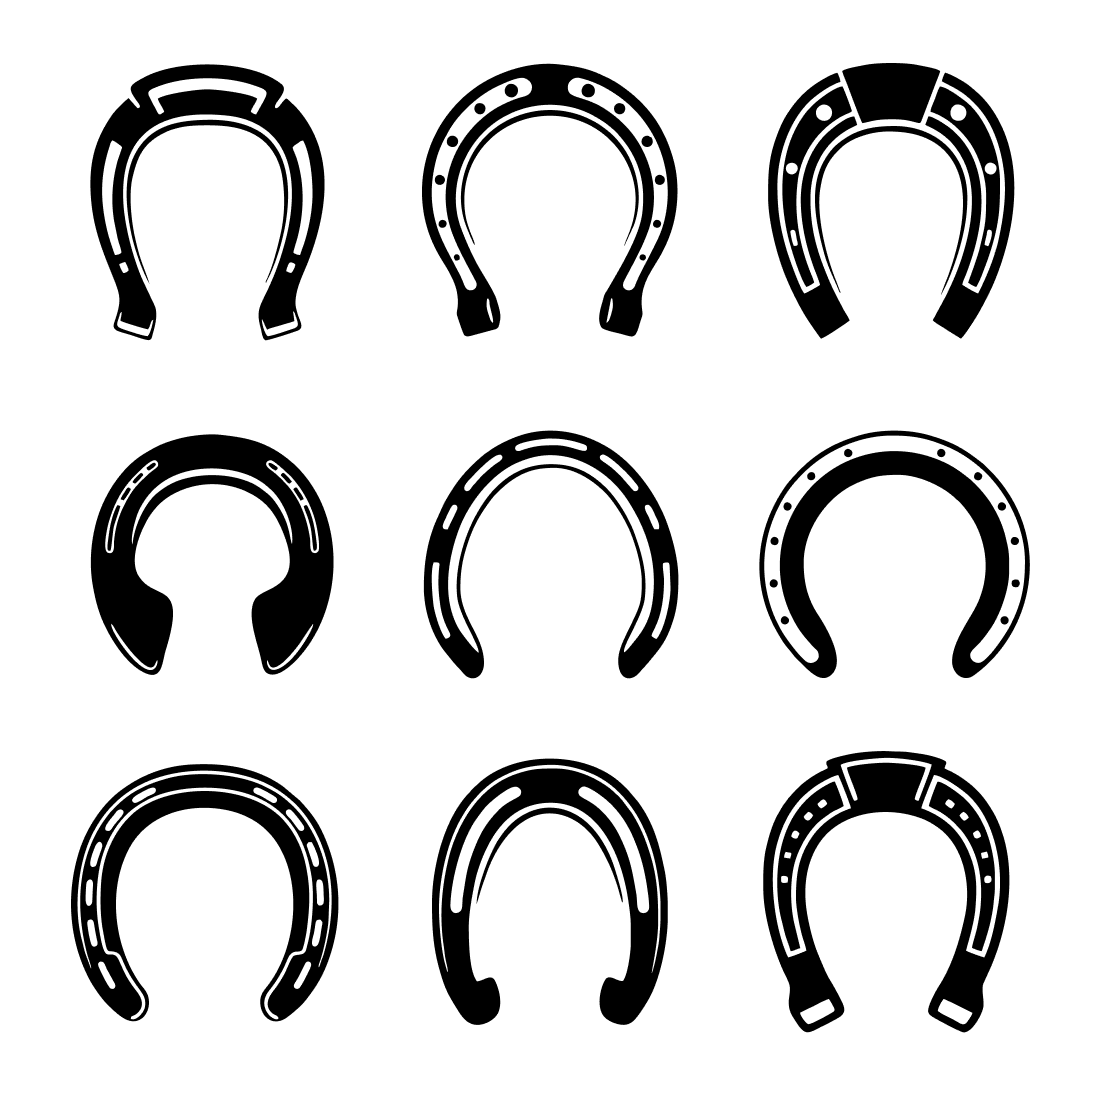 Set of black horseshoes on a white background.